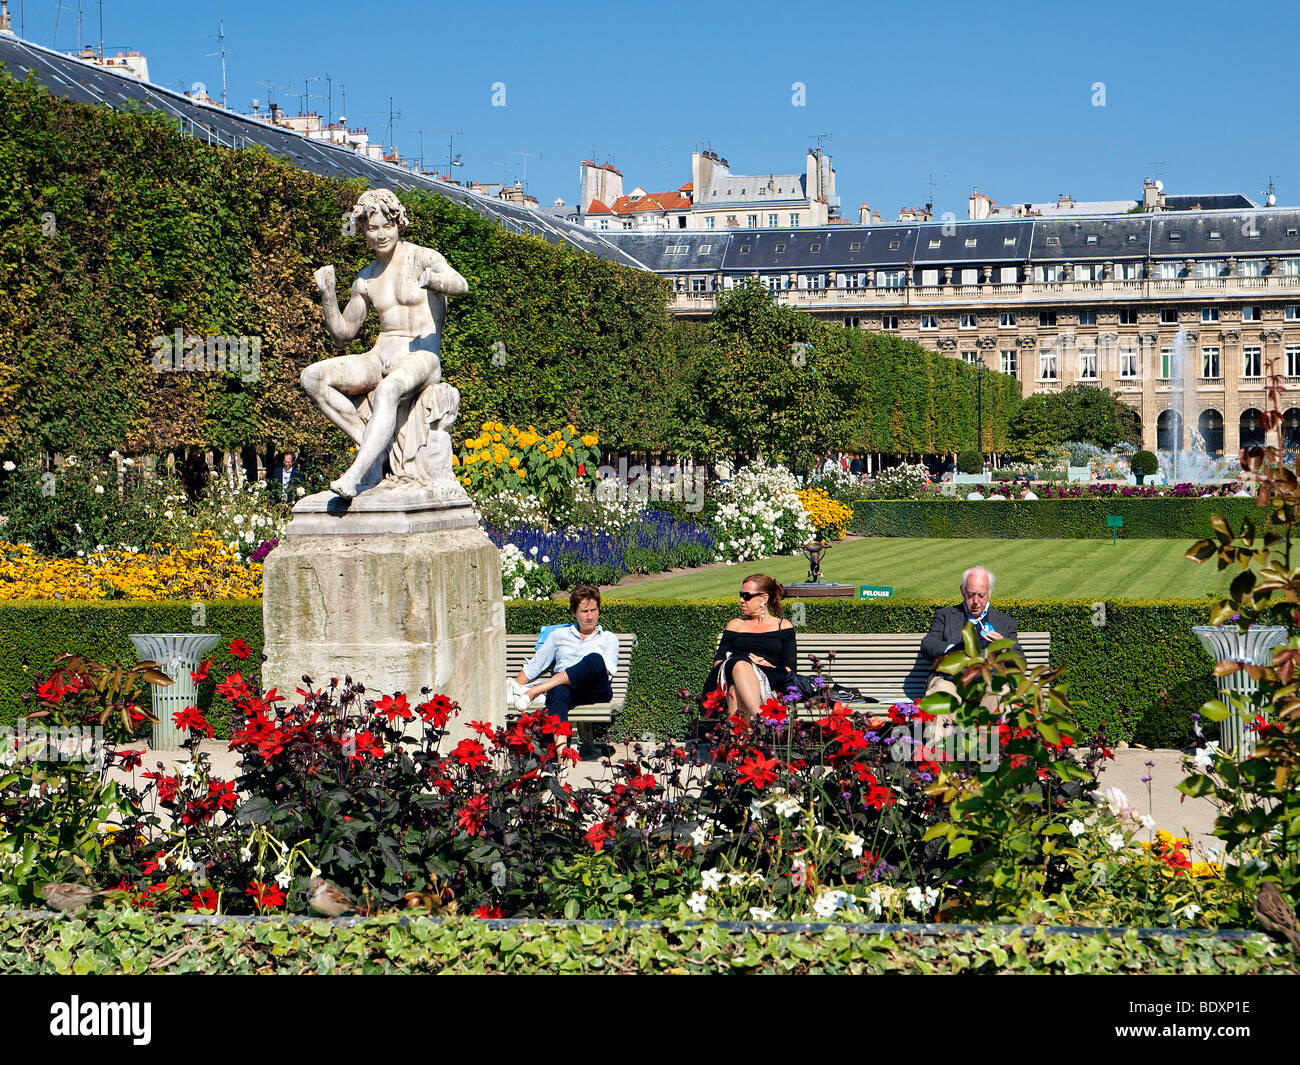 The gardens at Palais Royal Paris, France. Stock Photo